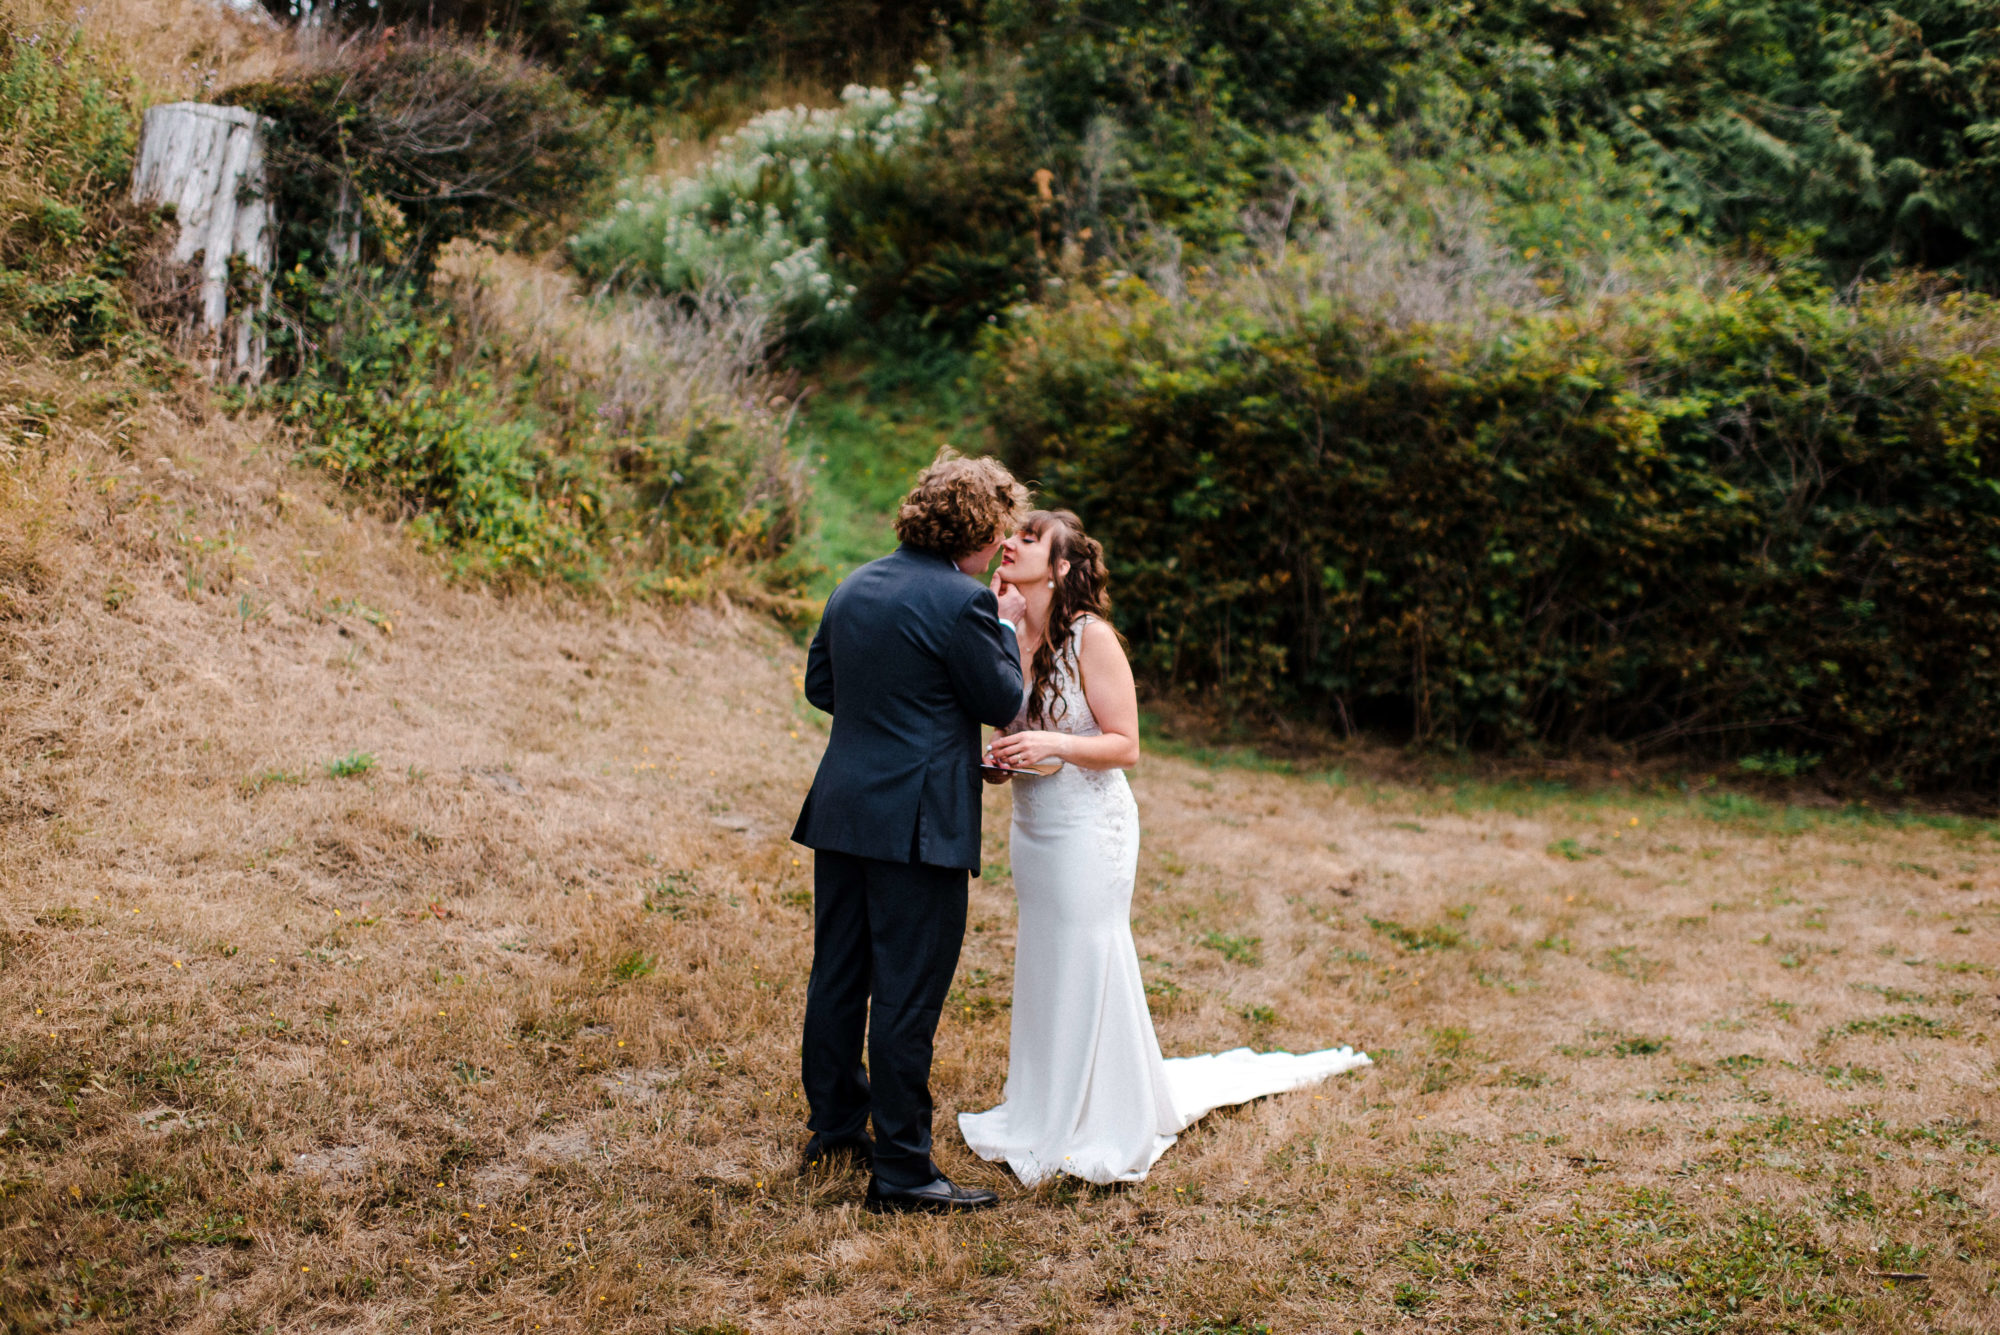 Bride and groom at an outdoor Vashon Island wedding venue